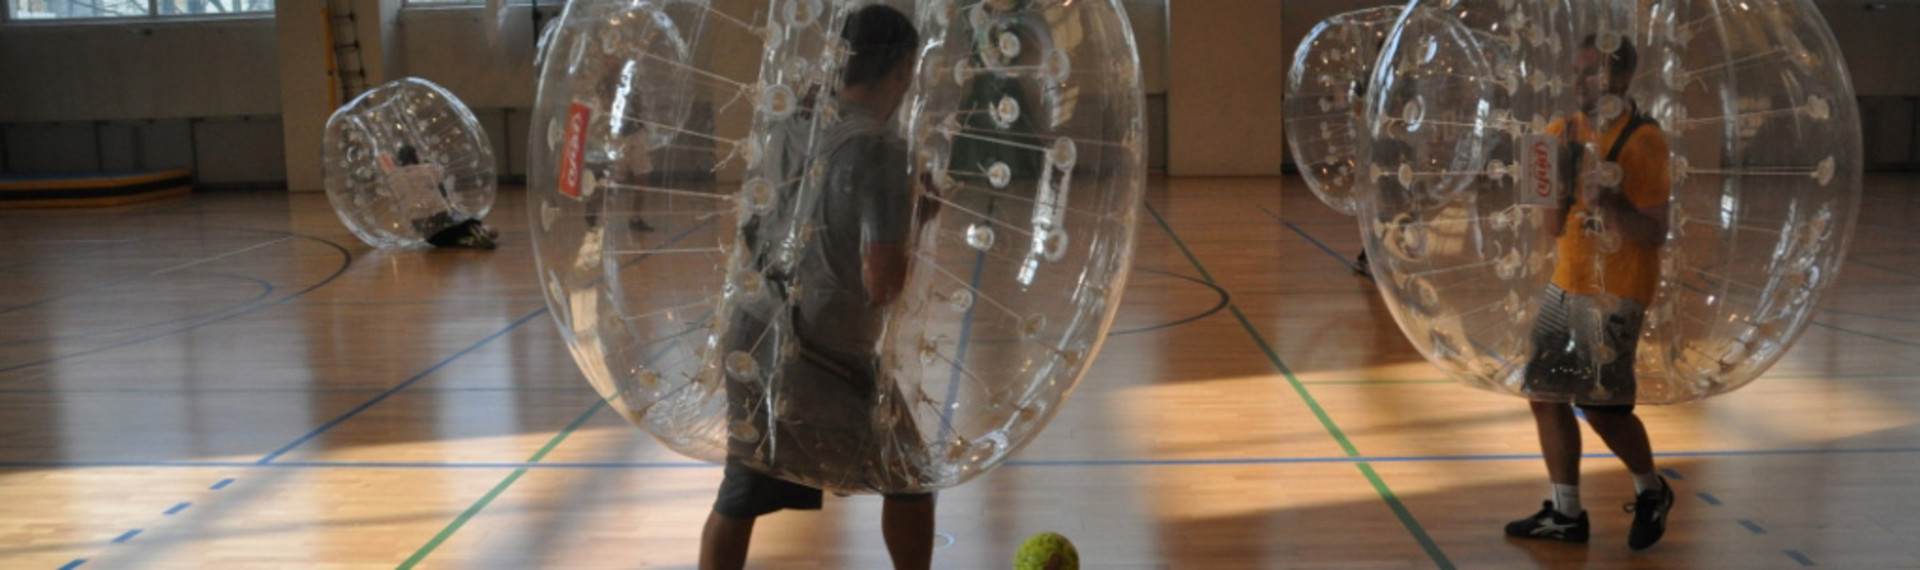 Boblefotball i Gdansk - hopp i bobledraktene og se hvem som er best